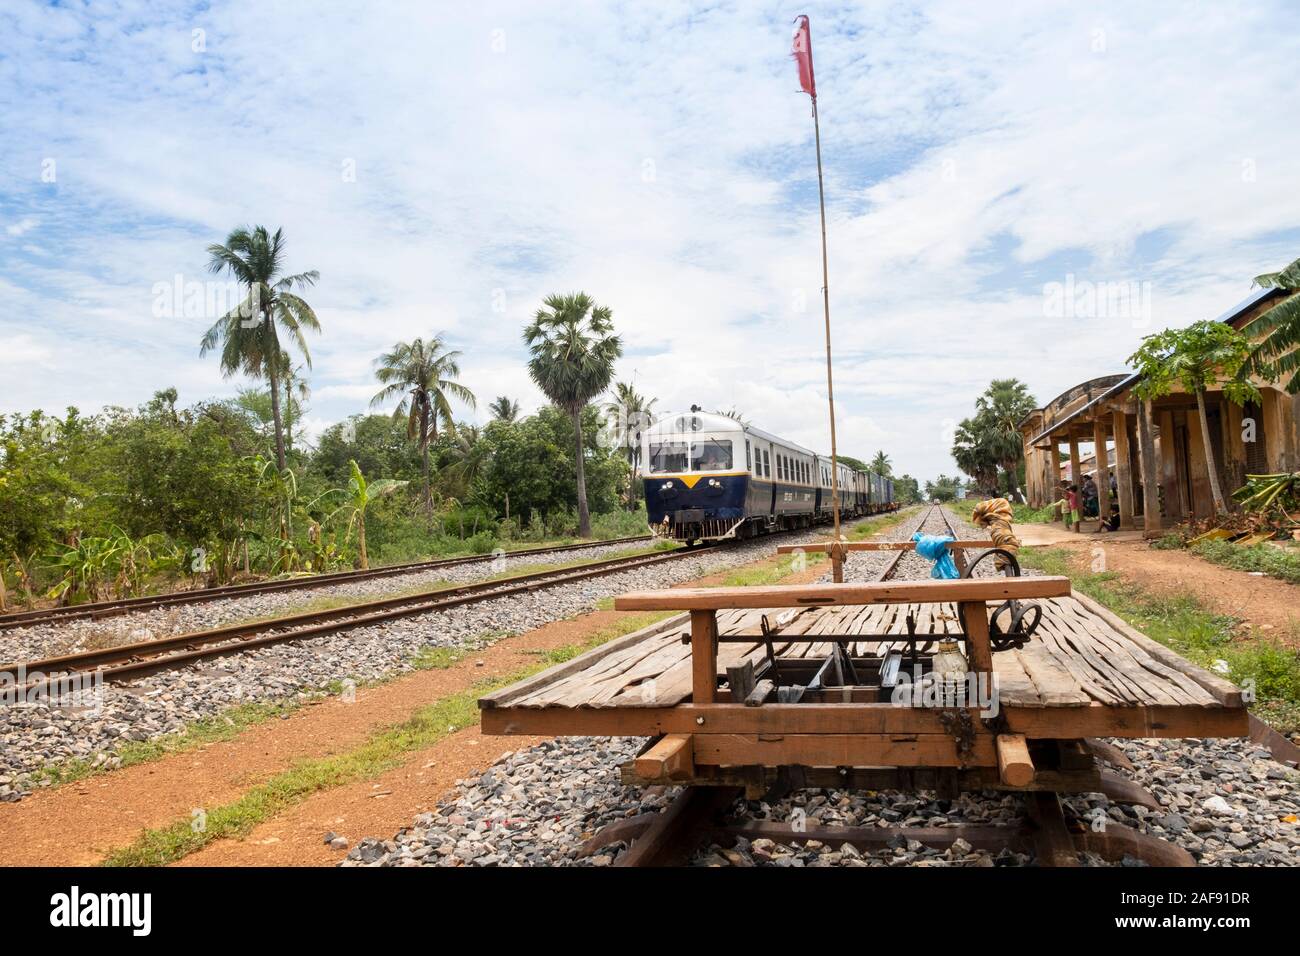 Die neu eröffnete Battambang Bambus Zug, durch Kambodschaner nach der Khmer Rouge Kriege und jetzt eine Touristenattraktion verwendet Stockfoto